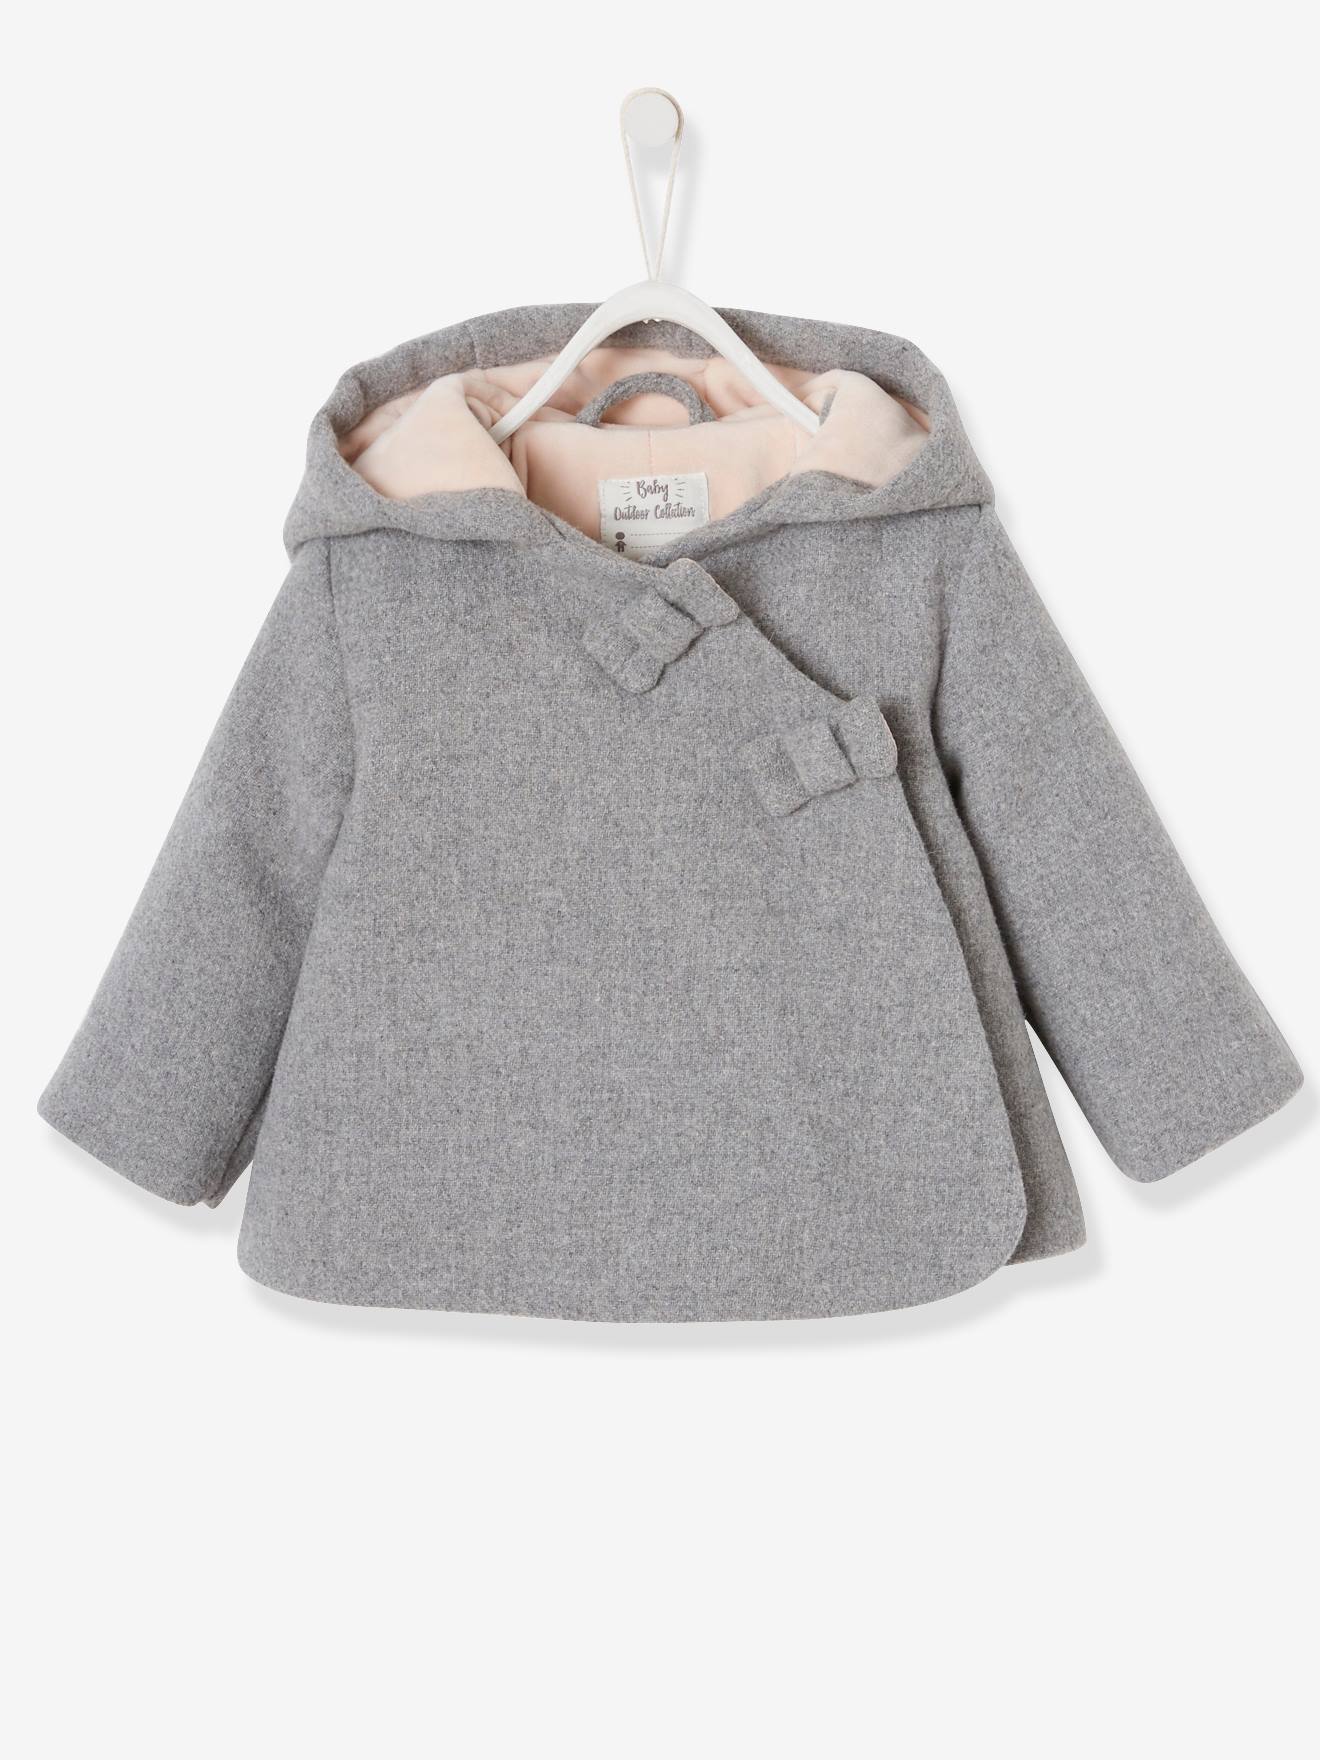 Manteau à capuche bébé fille lainage doublé et ouatiné gris clair chiné